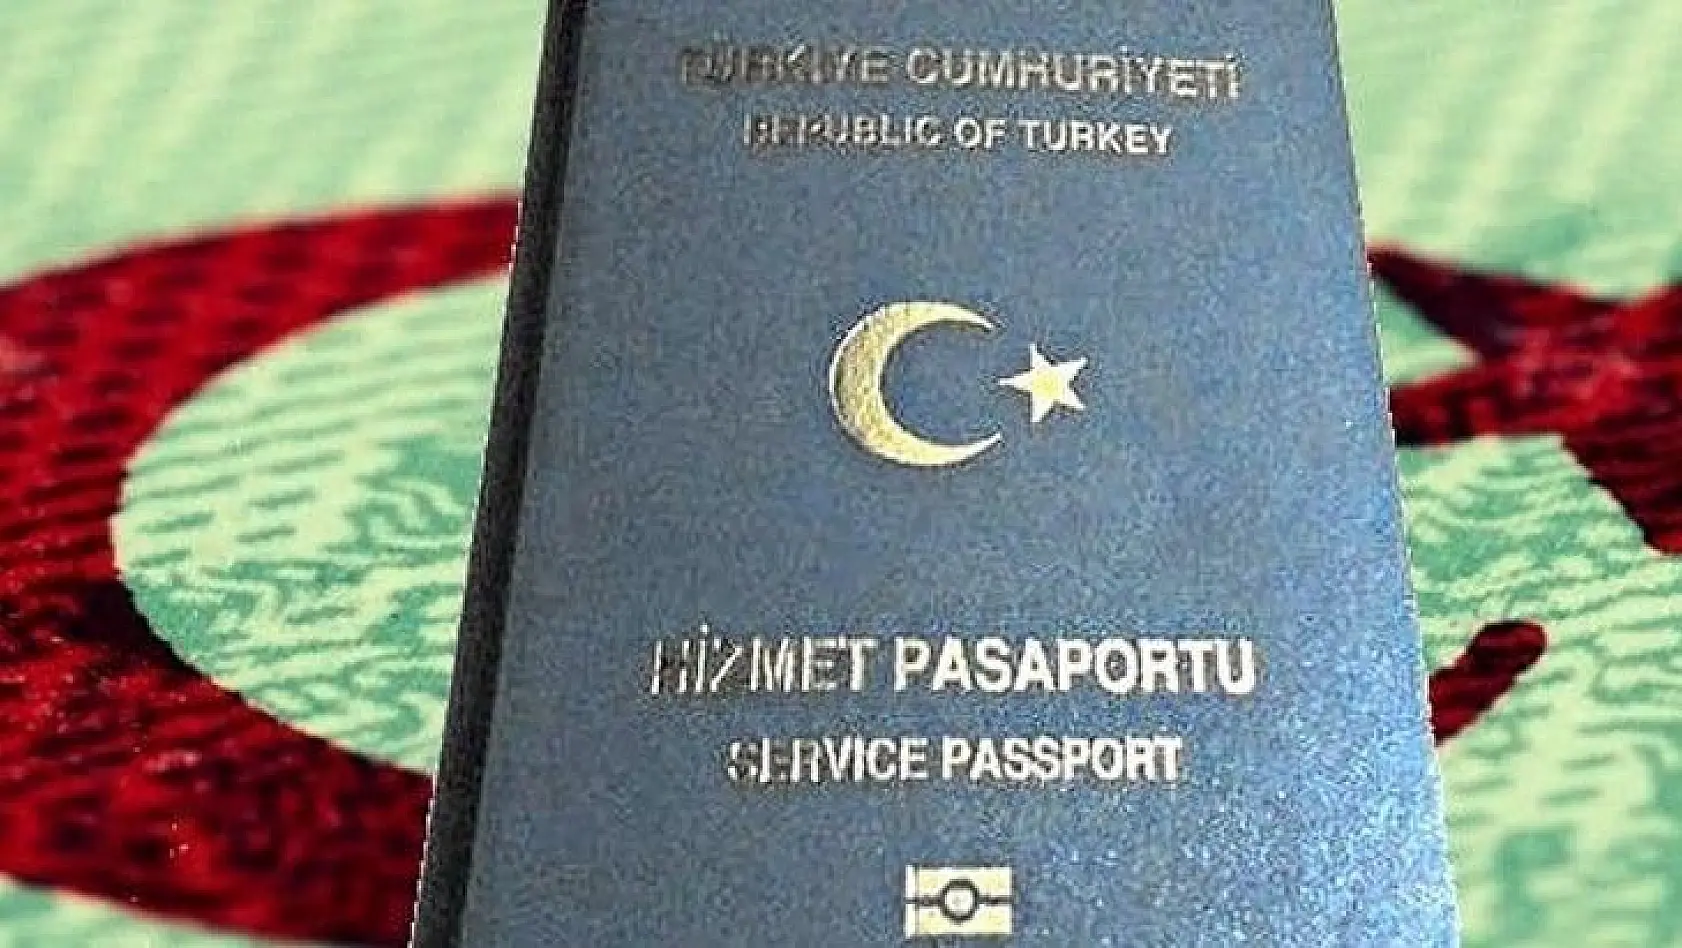 Belediyelerce kamu görevlisi dışındaki kişilere hizmet pasaportu sağlanmasına yönelik soruşturma genişletiliyor